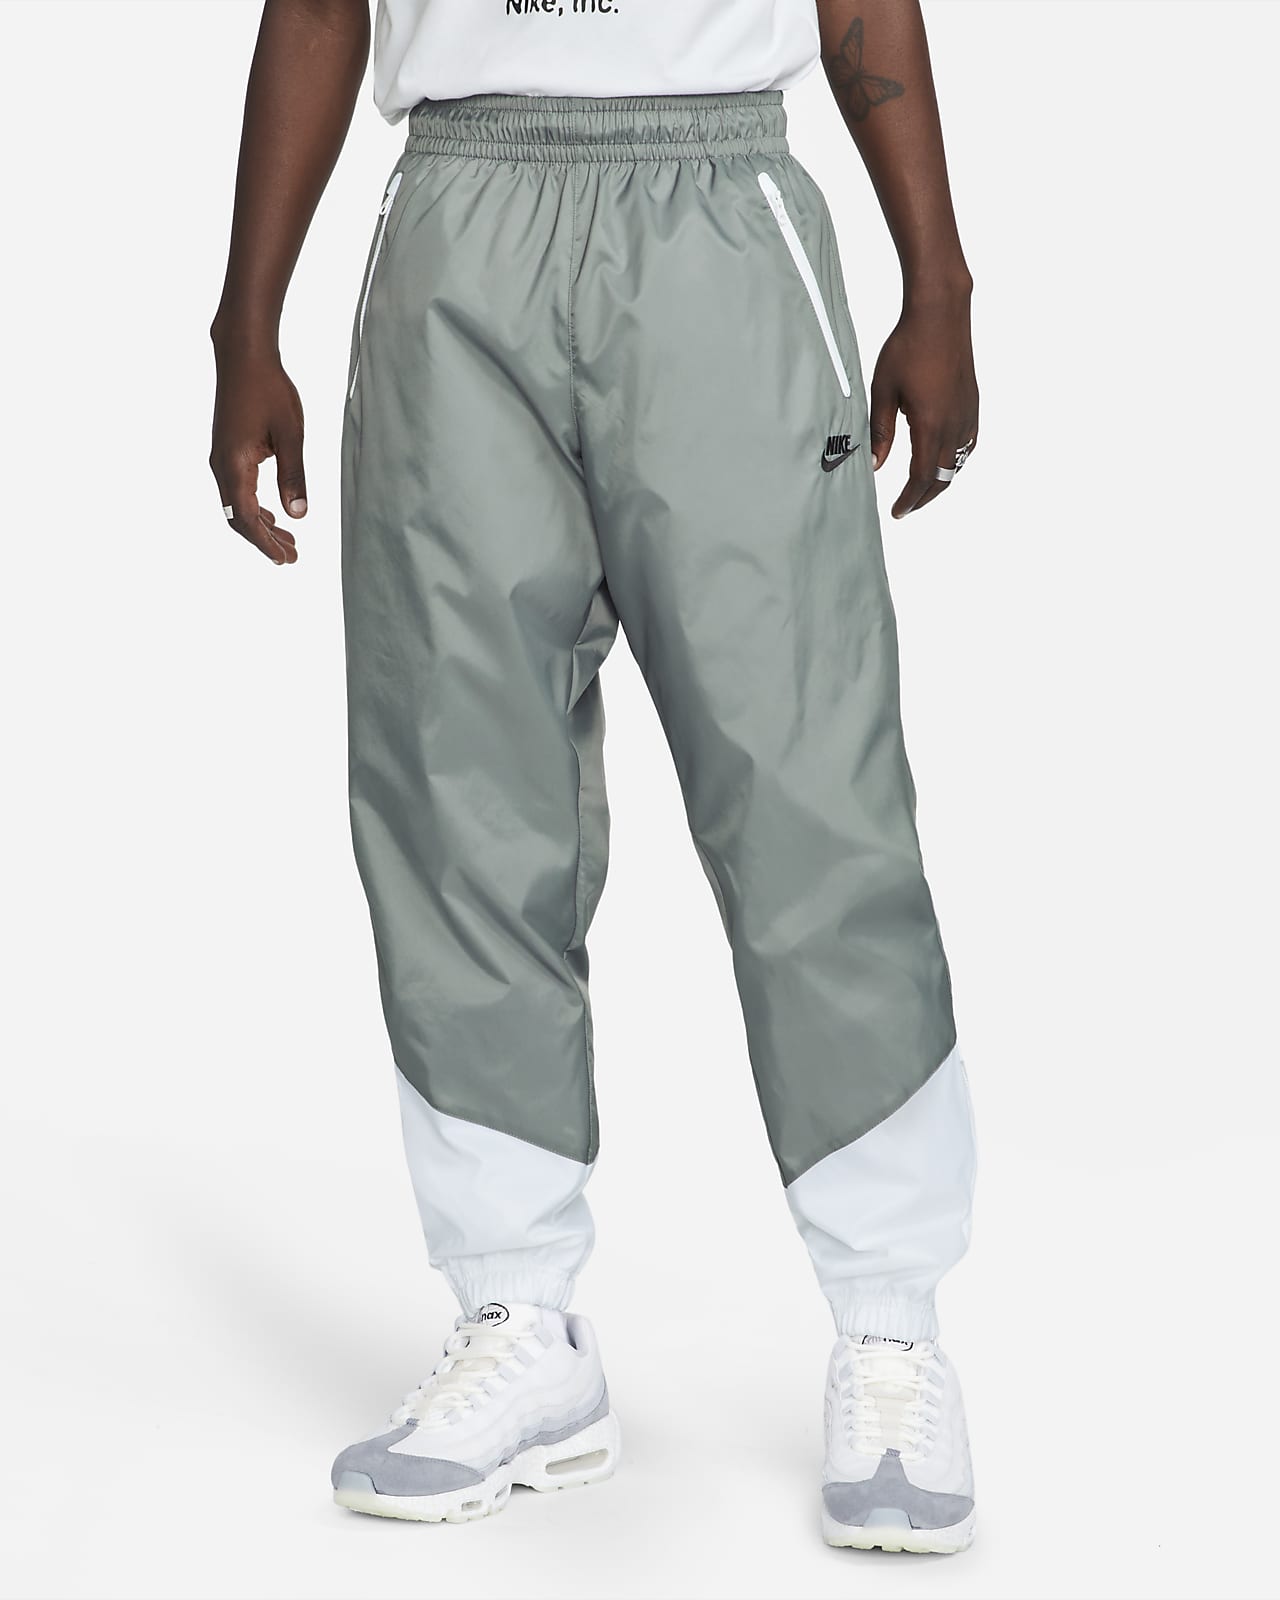 Nike Windrunner Men's Woven Lined Pants 